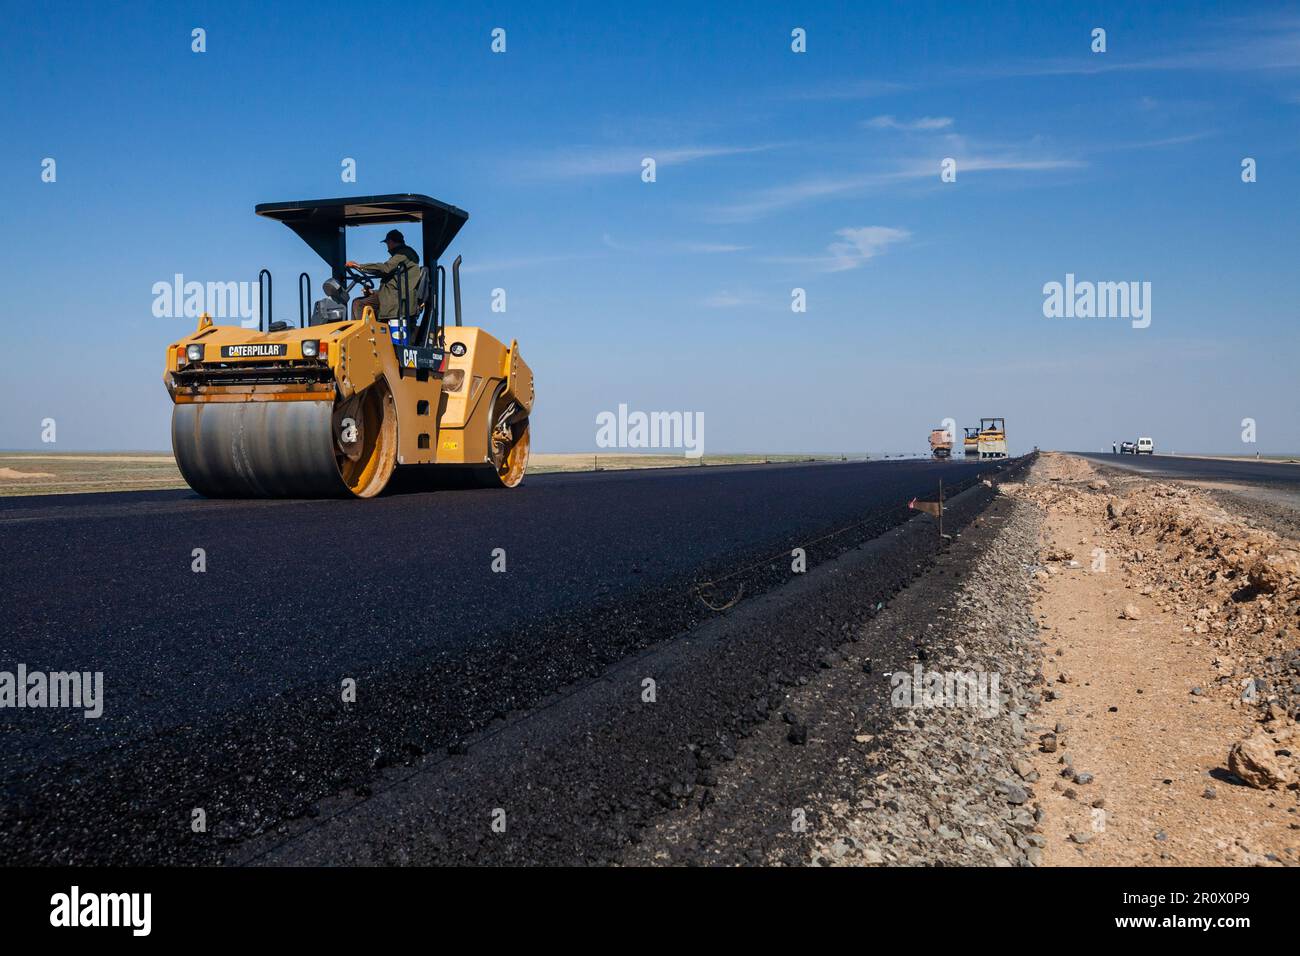 Province de Kyzylorda, Kazakhstan, 29 avril 2012 : le compacteur d'asphalte Caterpillar aplatit l'asphalte. Construction de l'autoroute Europe occidentale-Chine occidentale Banque D'Images